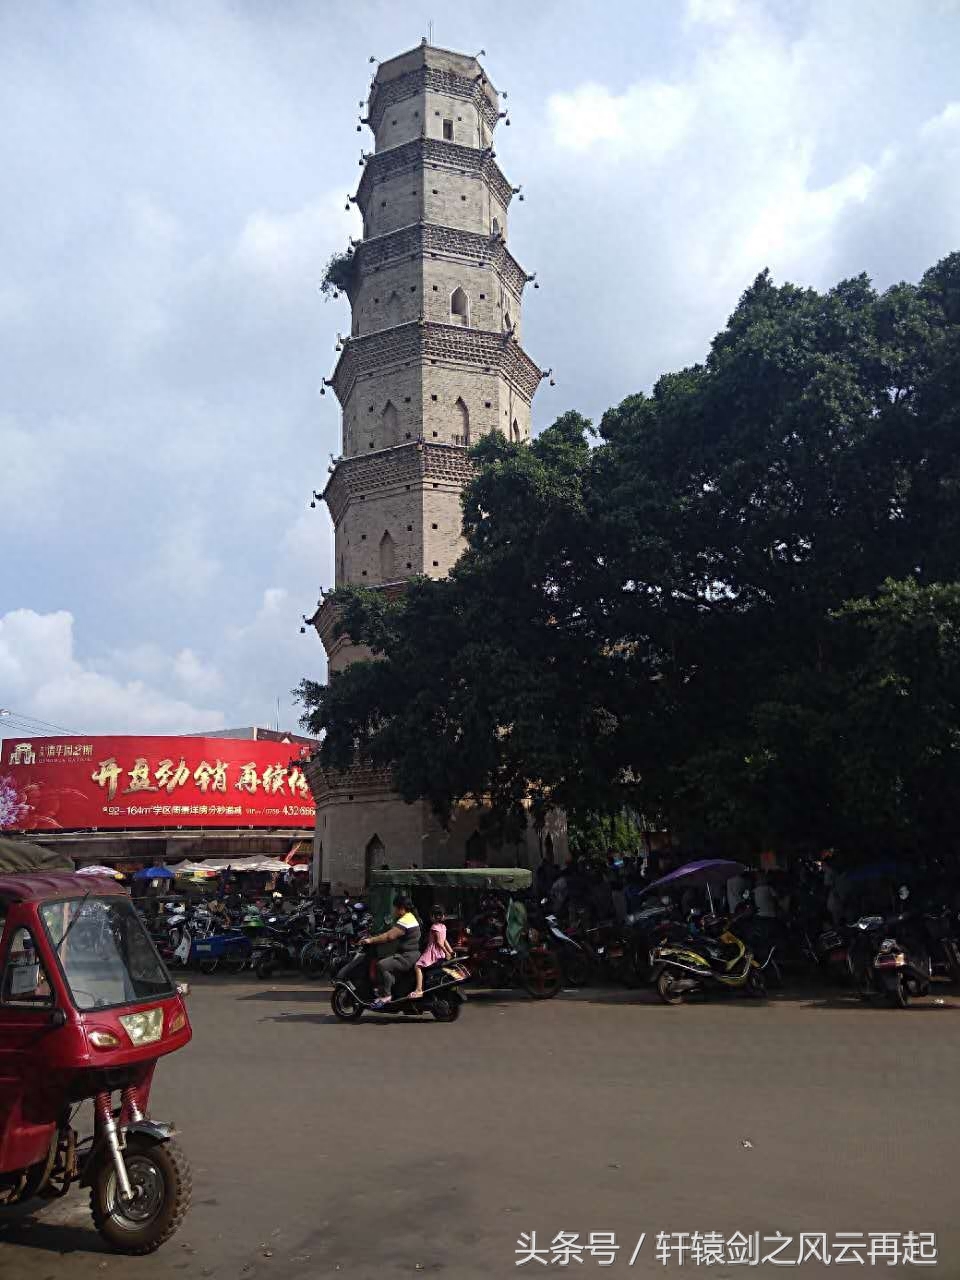 湛江徐闻八景之一登云塔，历史悠久，建筑独特